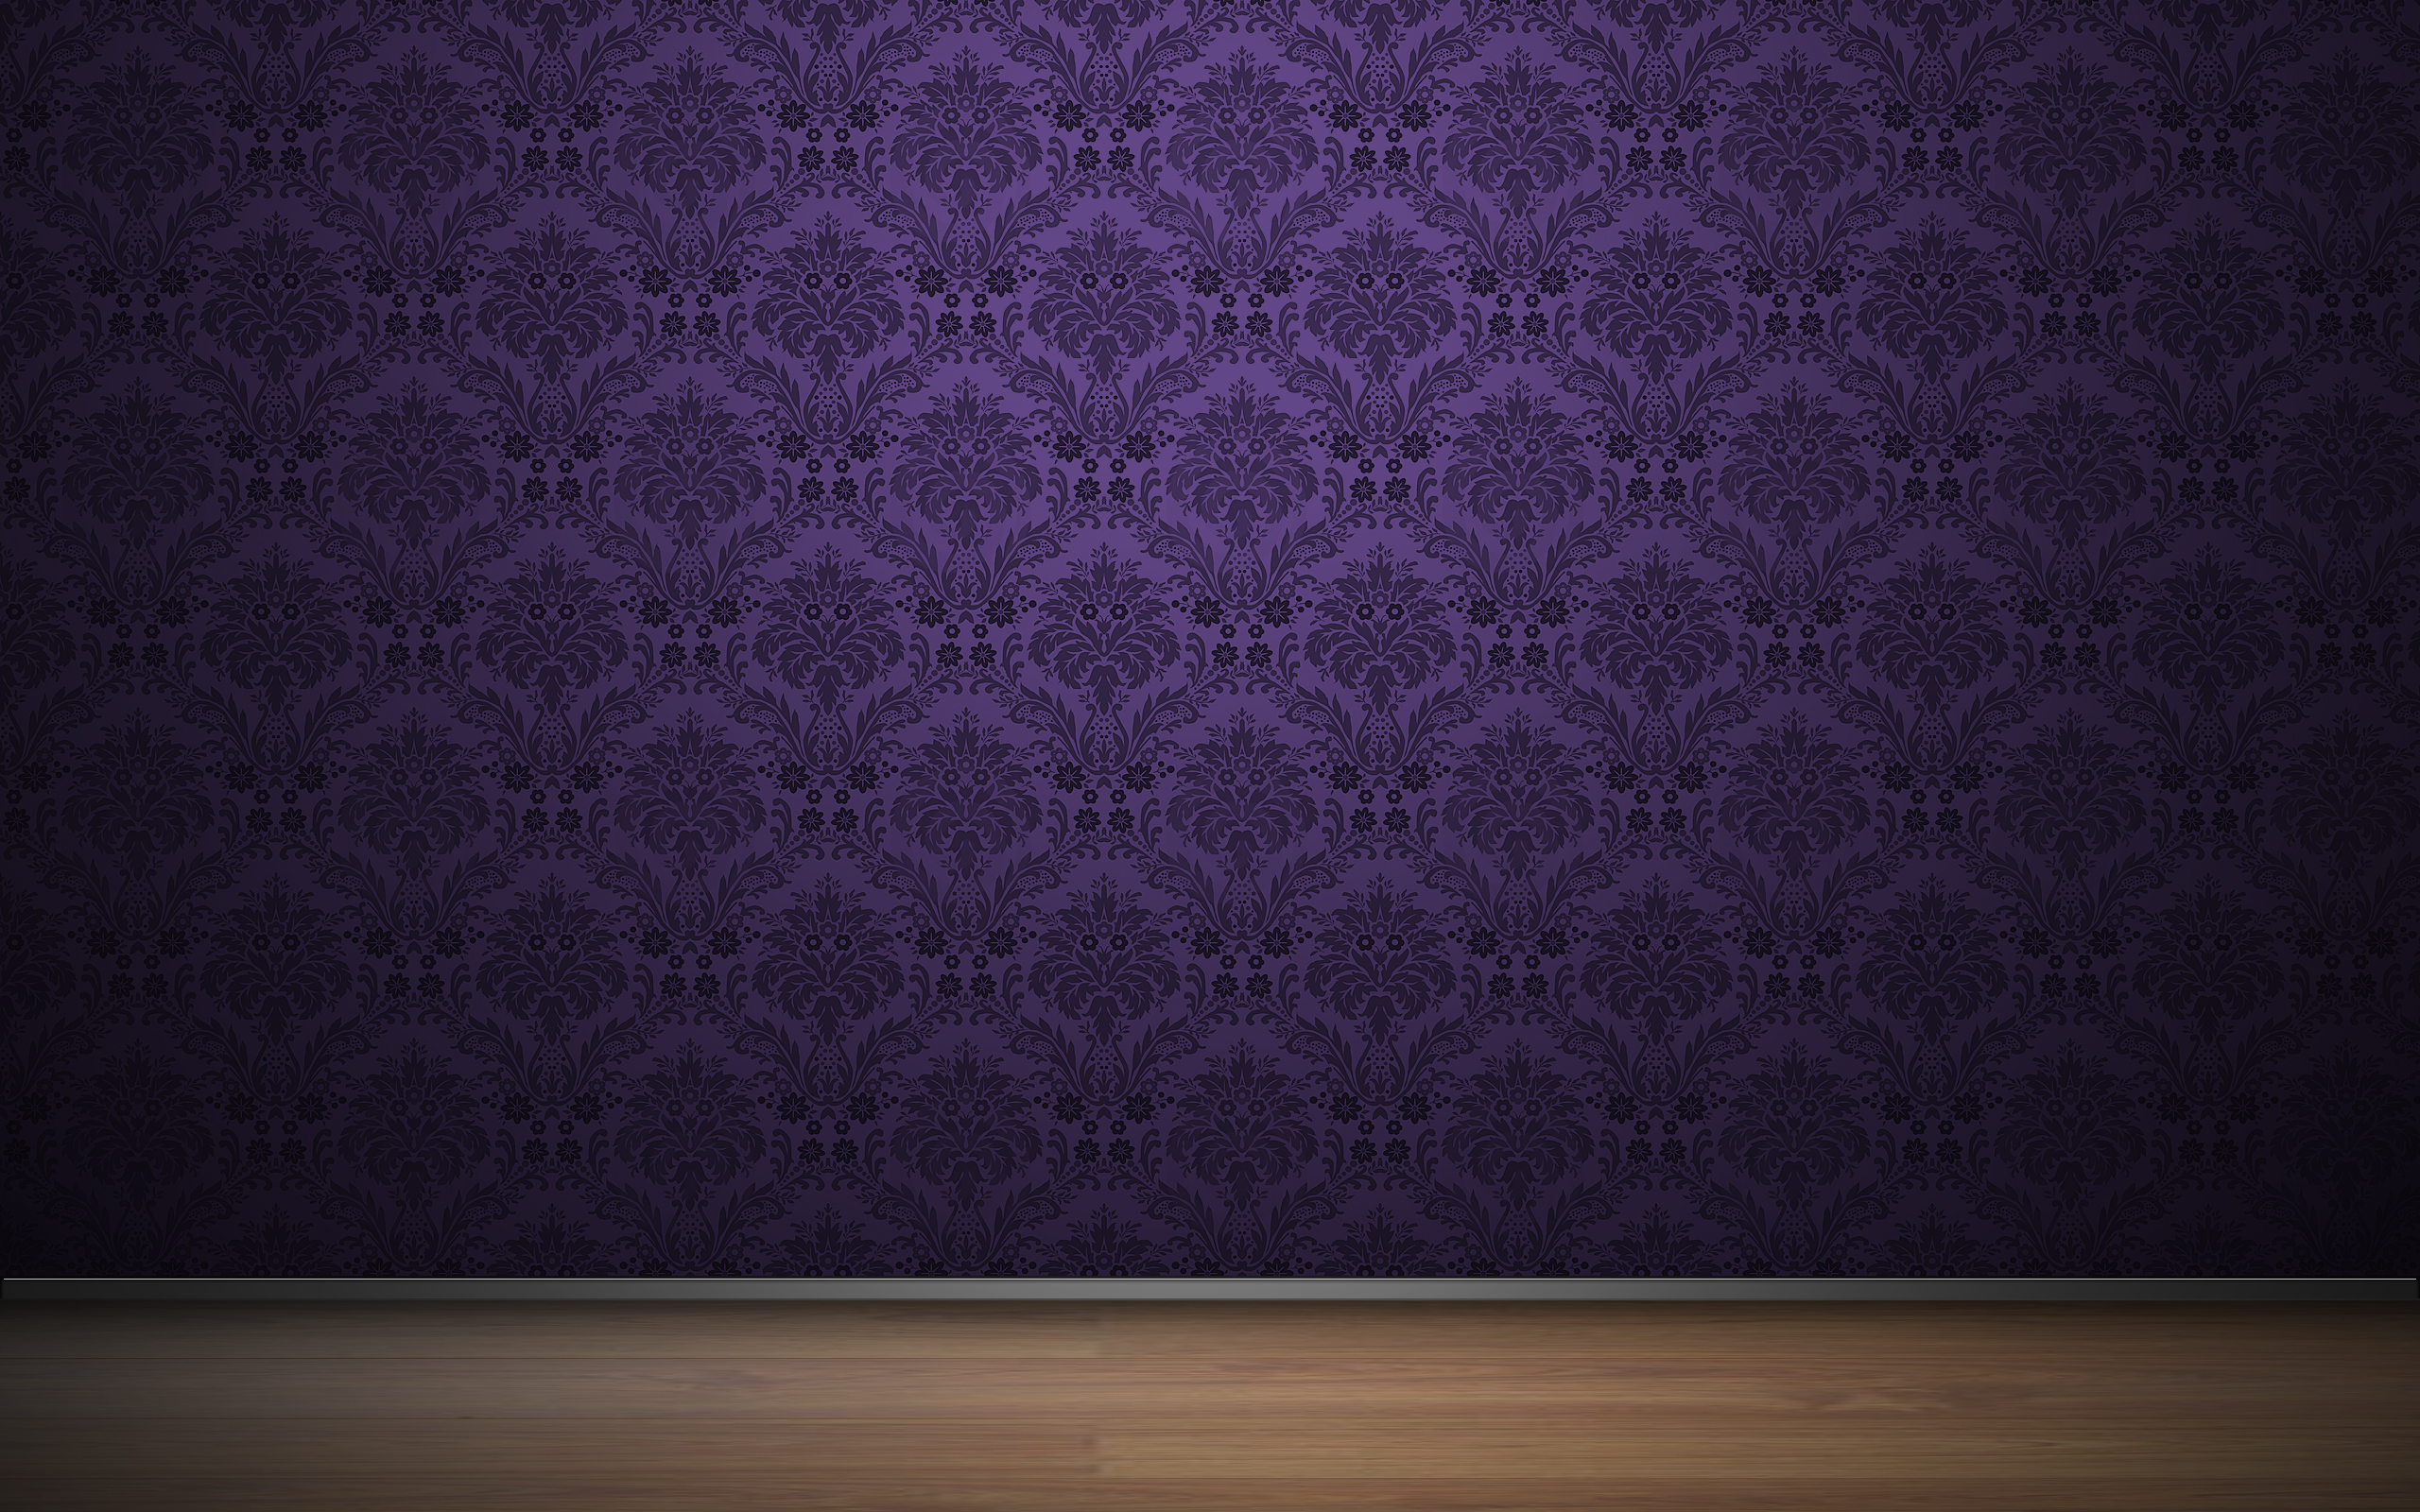 Обои без смс. Обои сиреневые для стен. Фиолетовые обои для стен. Фон с узорами. Текстурные обои для стен.